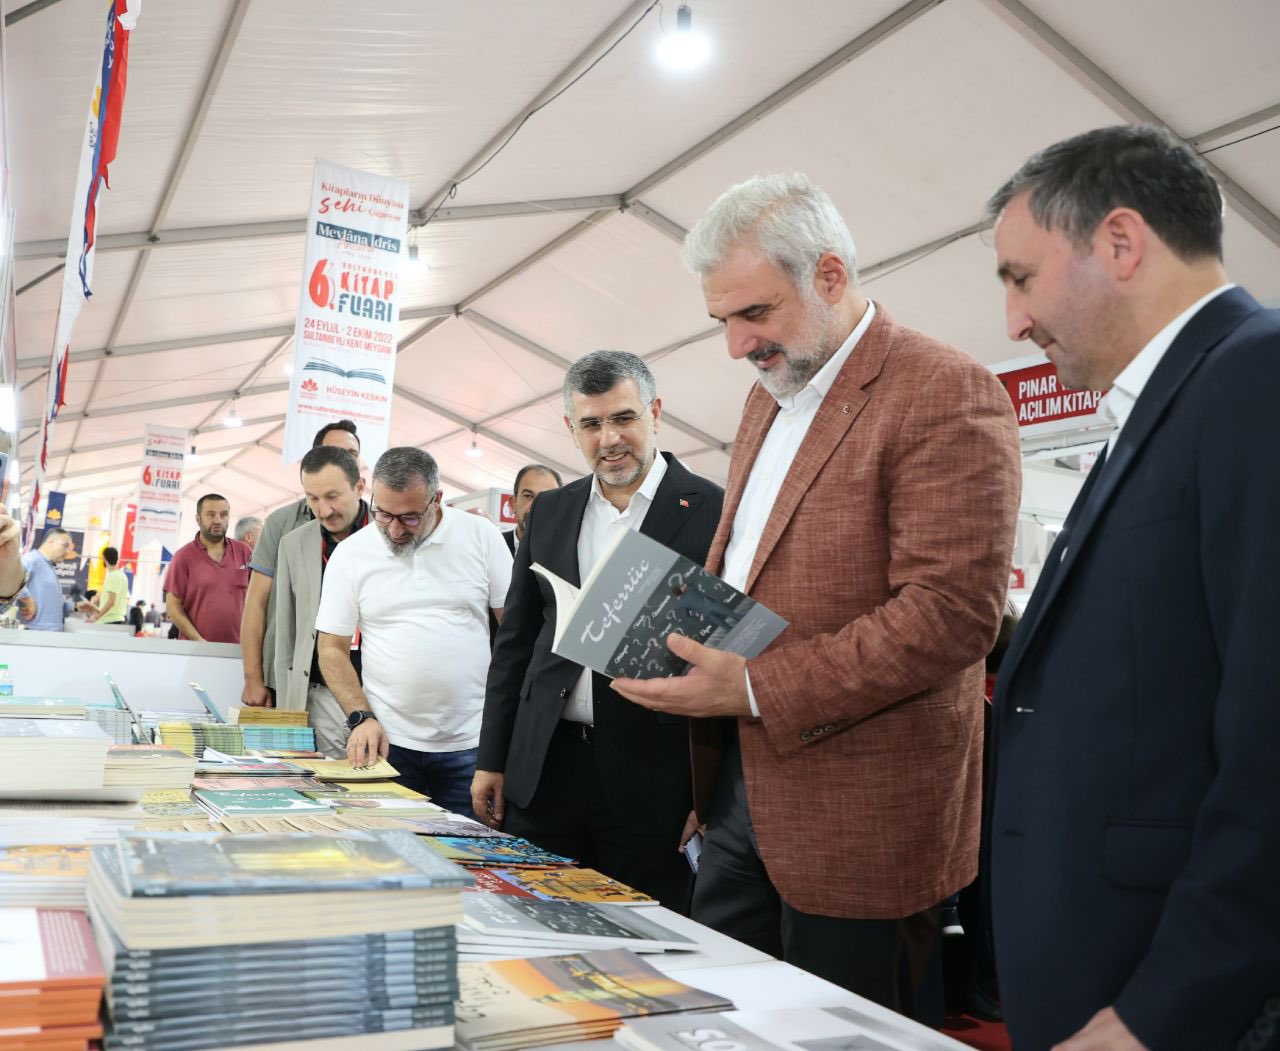  انتعاش سوق الكتب الدينية  في تركيا خلال شهر رمضان